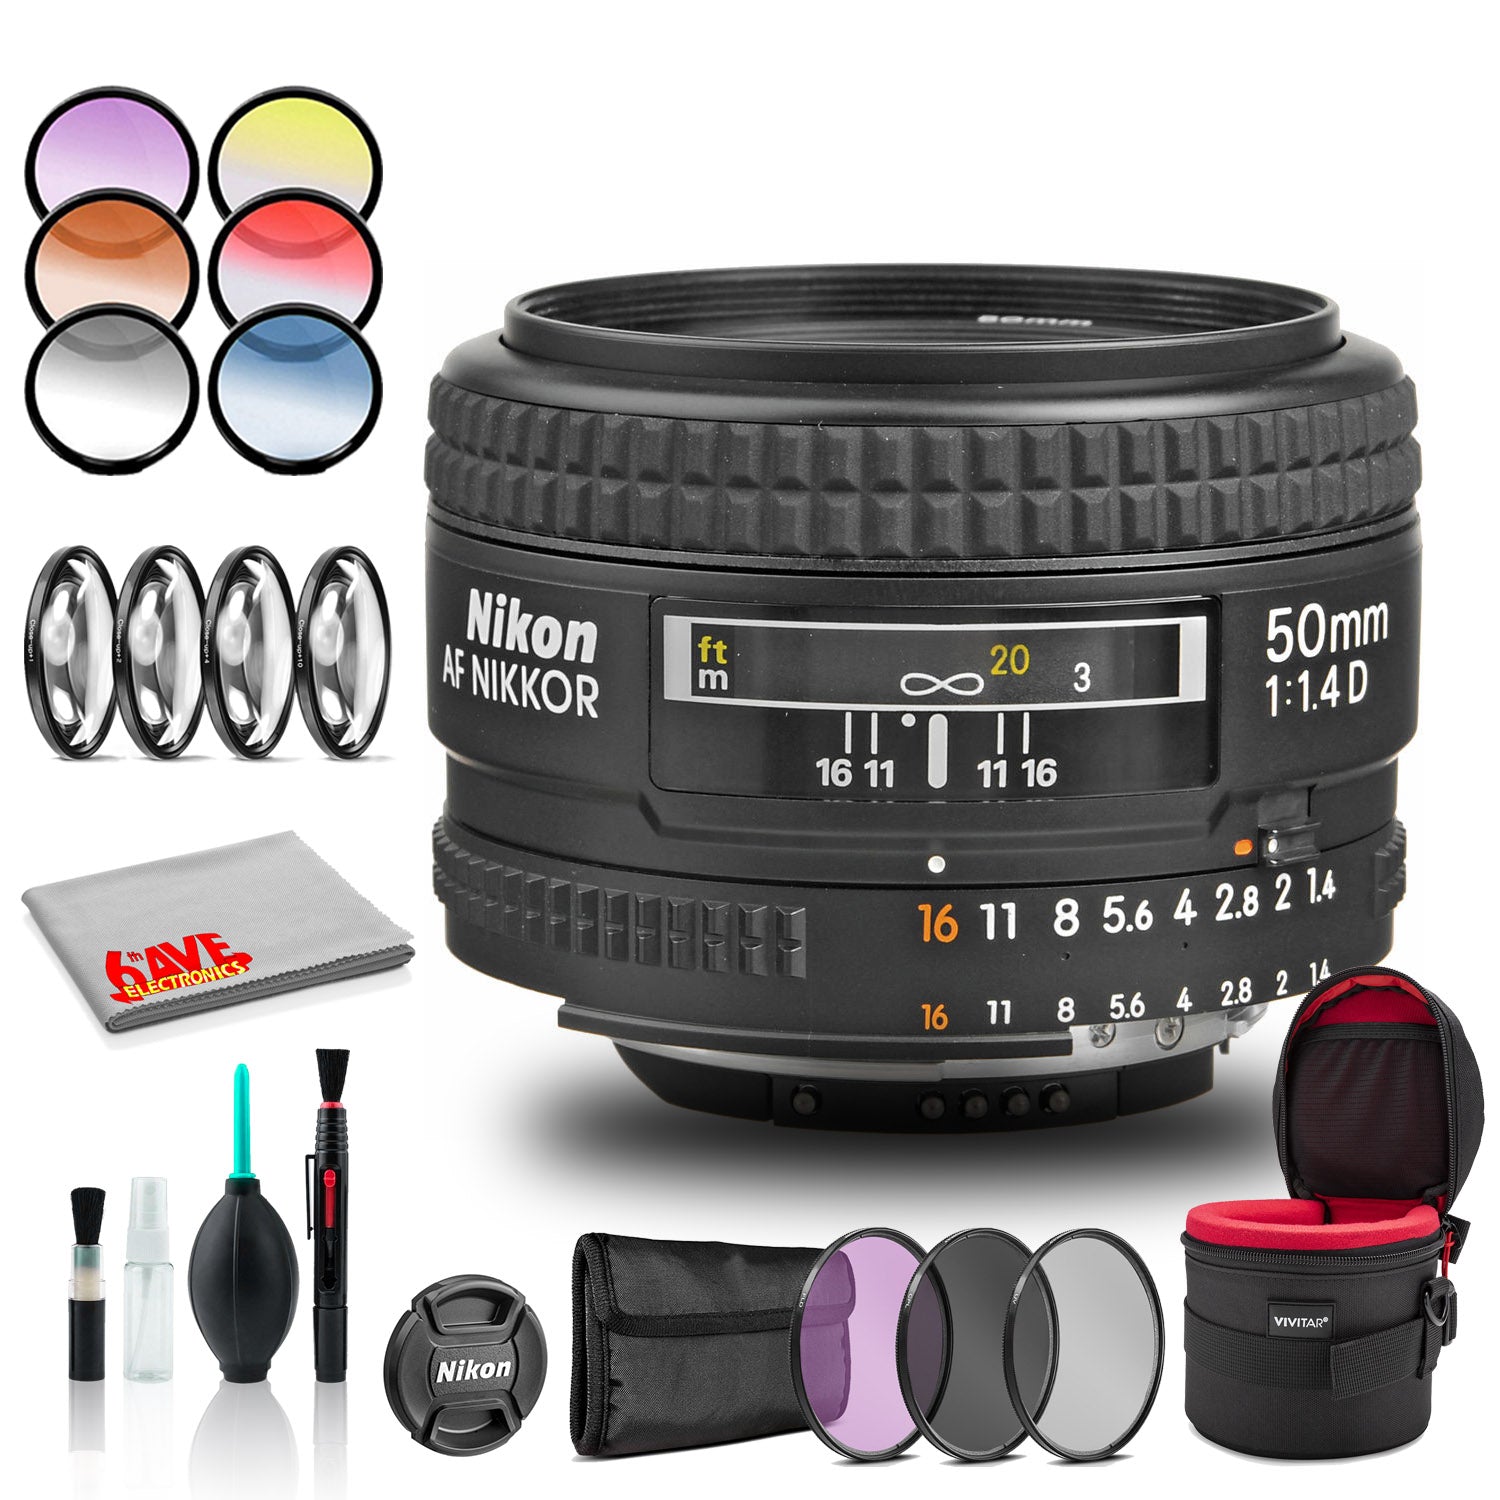 Nikon AF NIKKOR 50mm f/1.4D Lens (INTL Model) Includes Case and Filter Kits Bundle